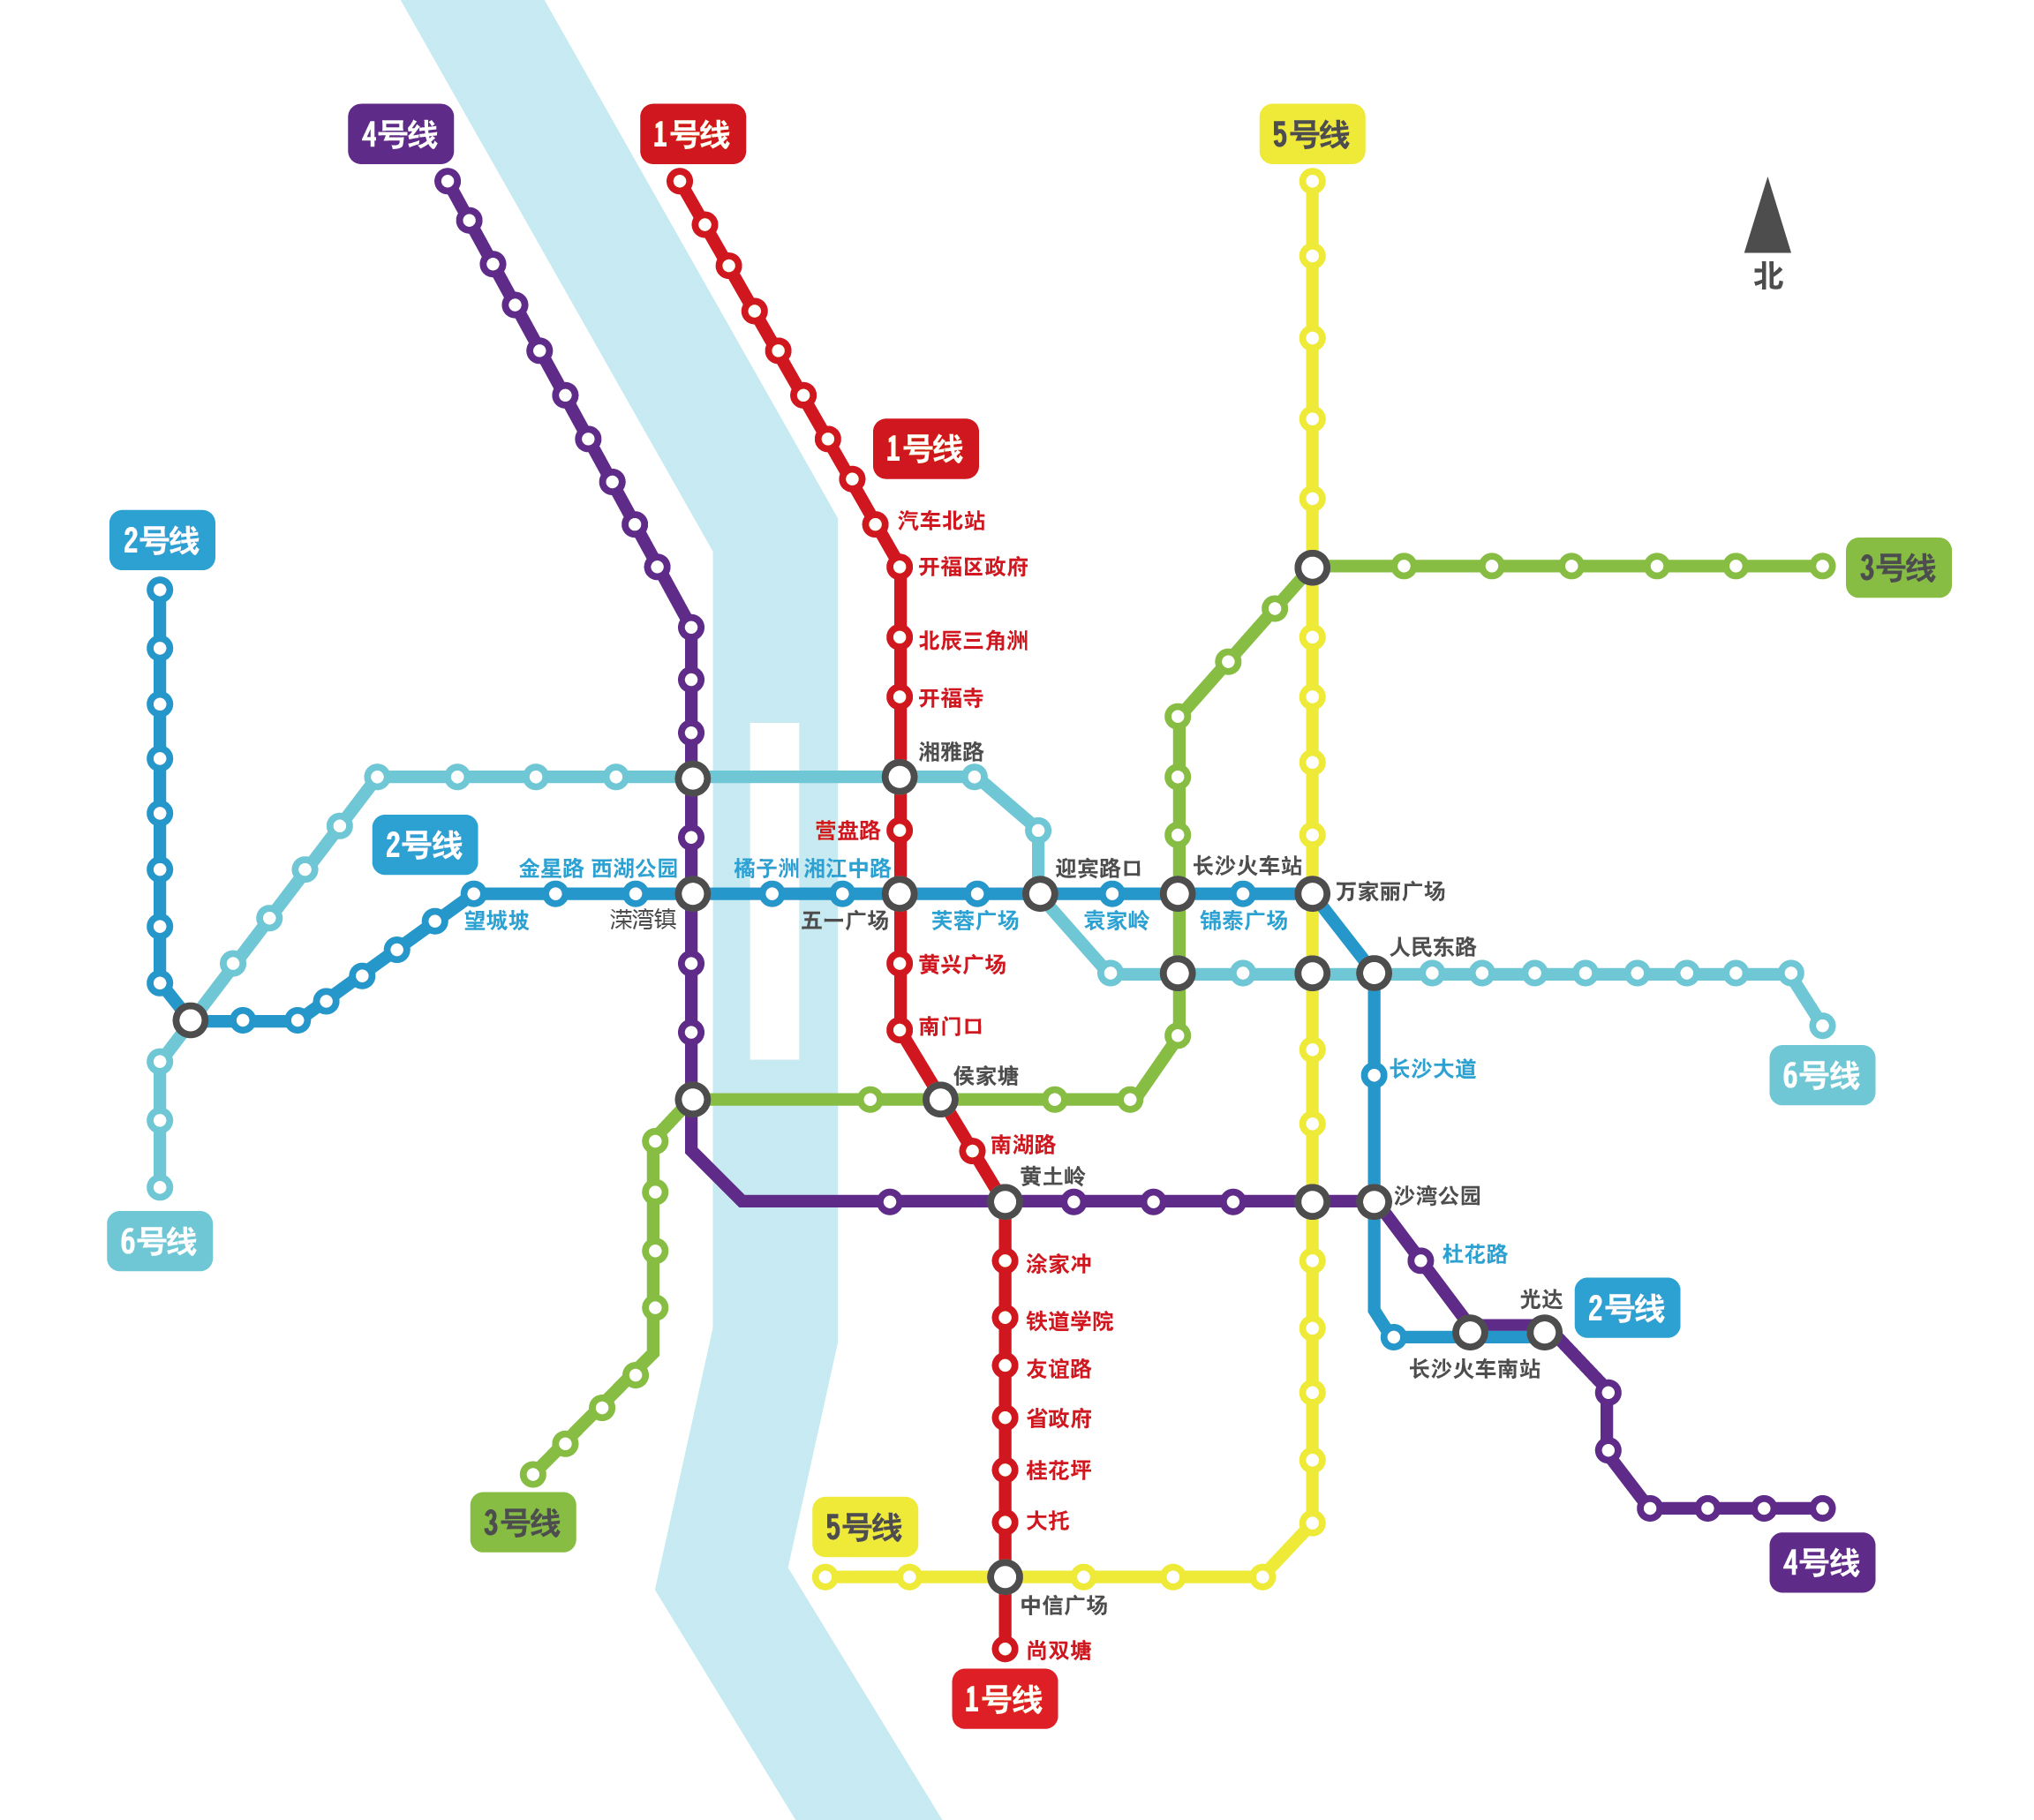 原创作品:长沙地铁 轨道交通线路图